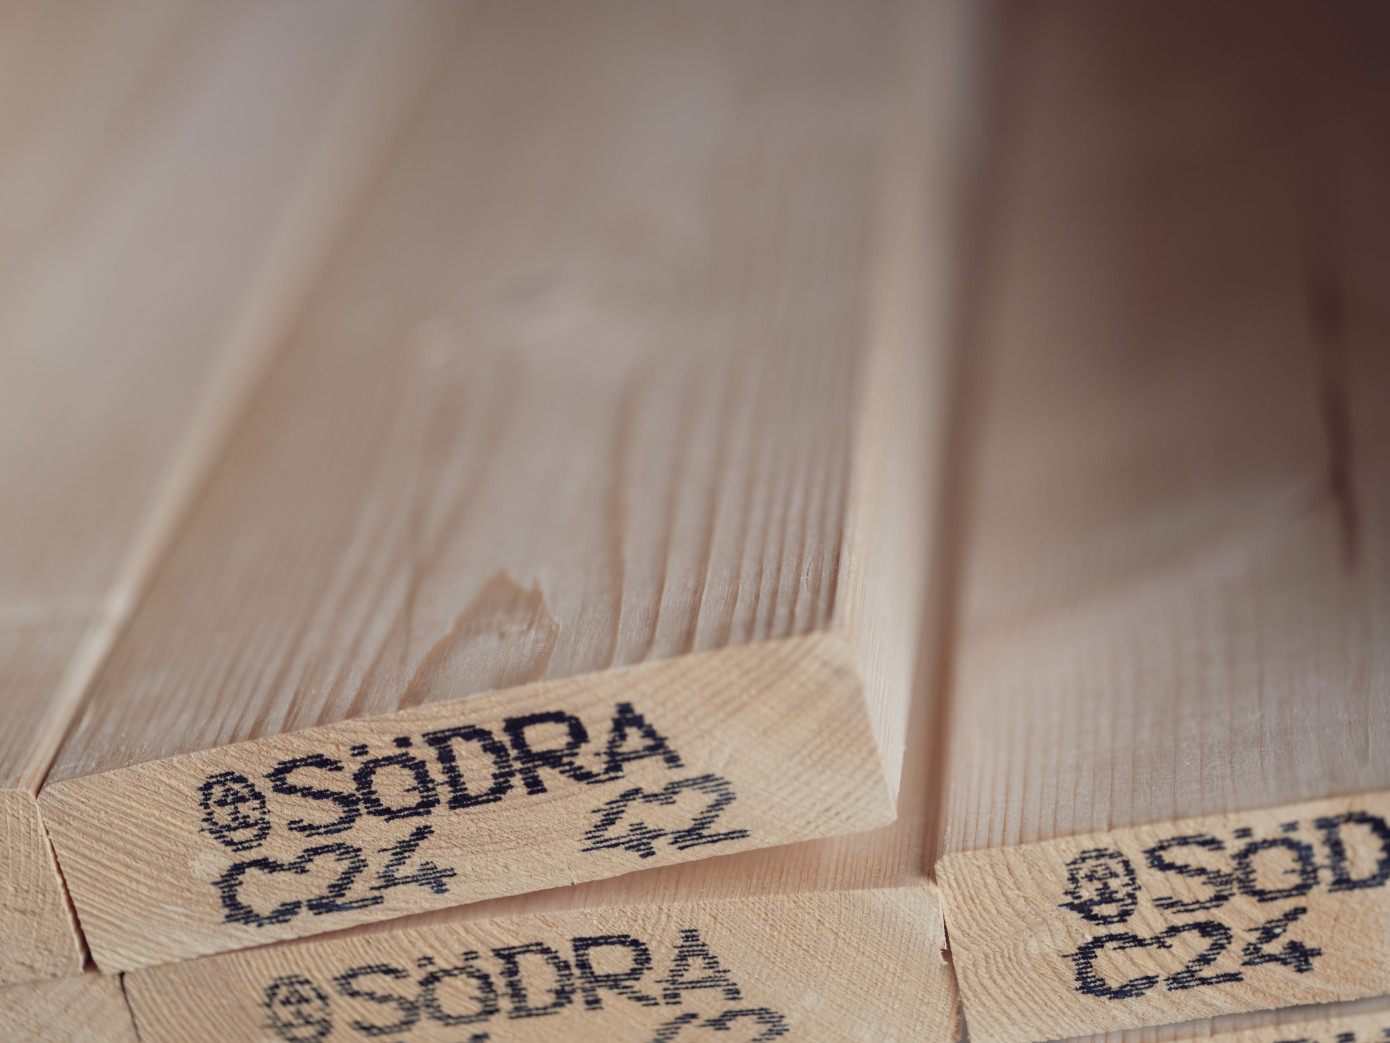 Södra Wood оптимизирует лесопильное производство в Швеции